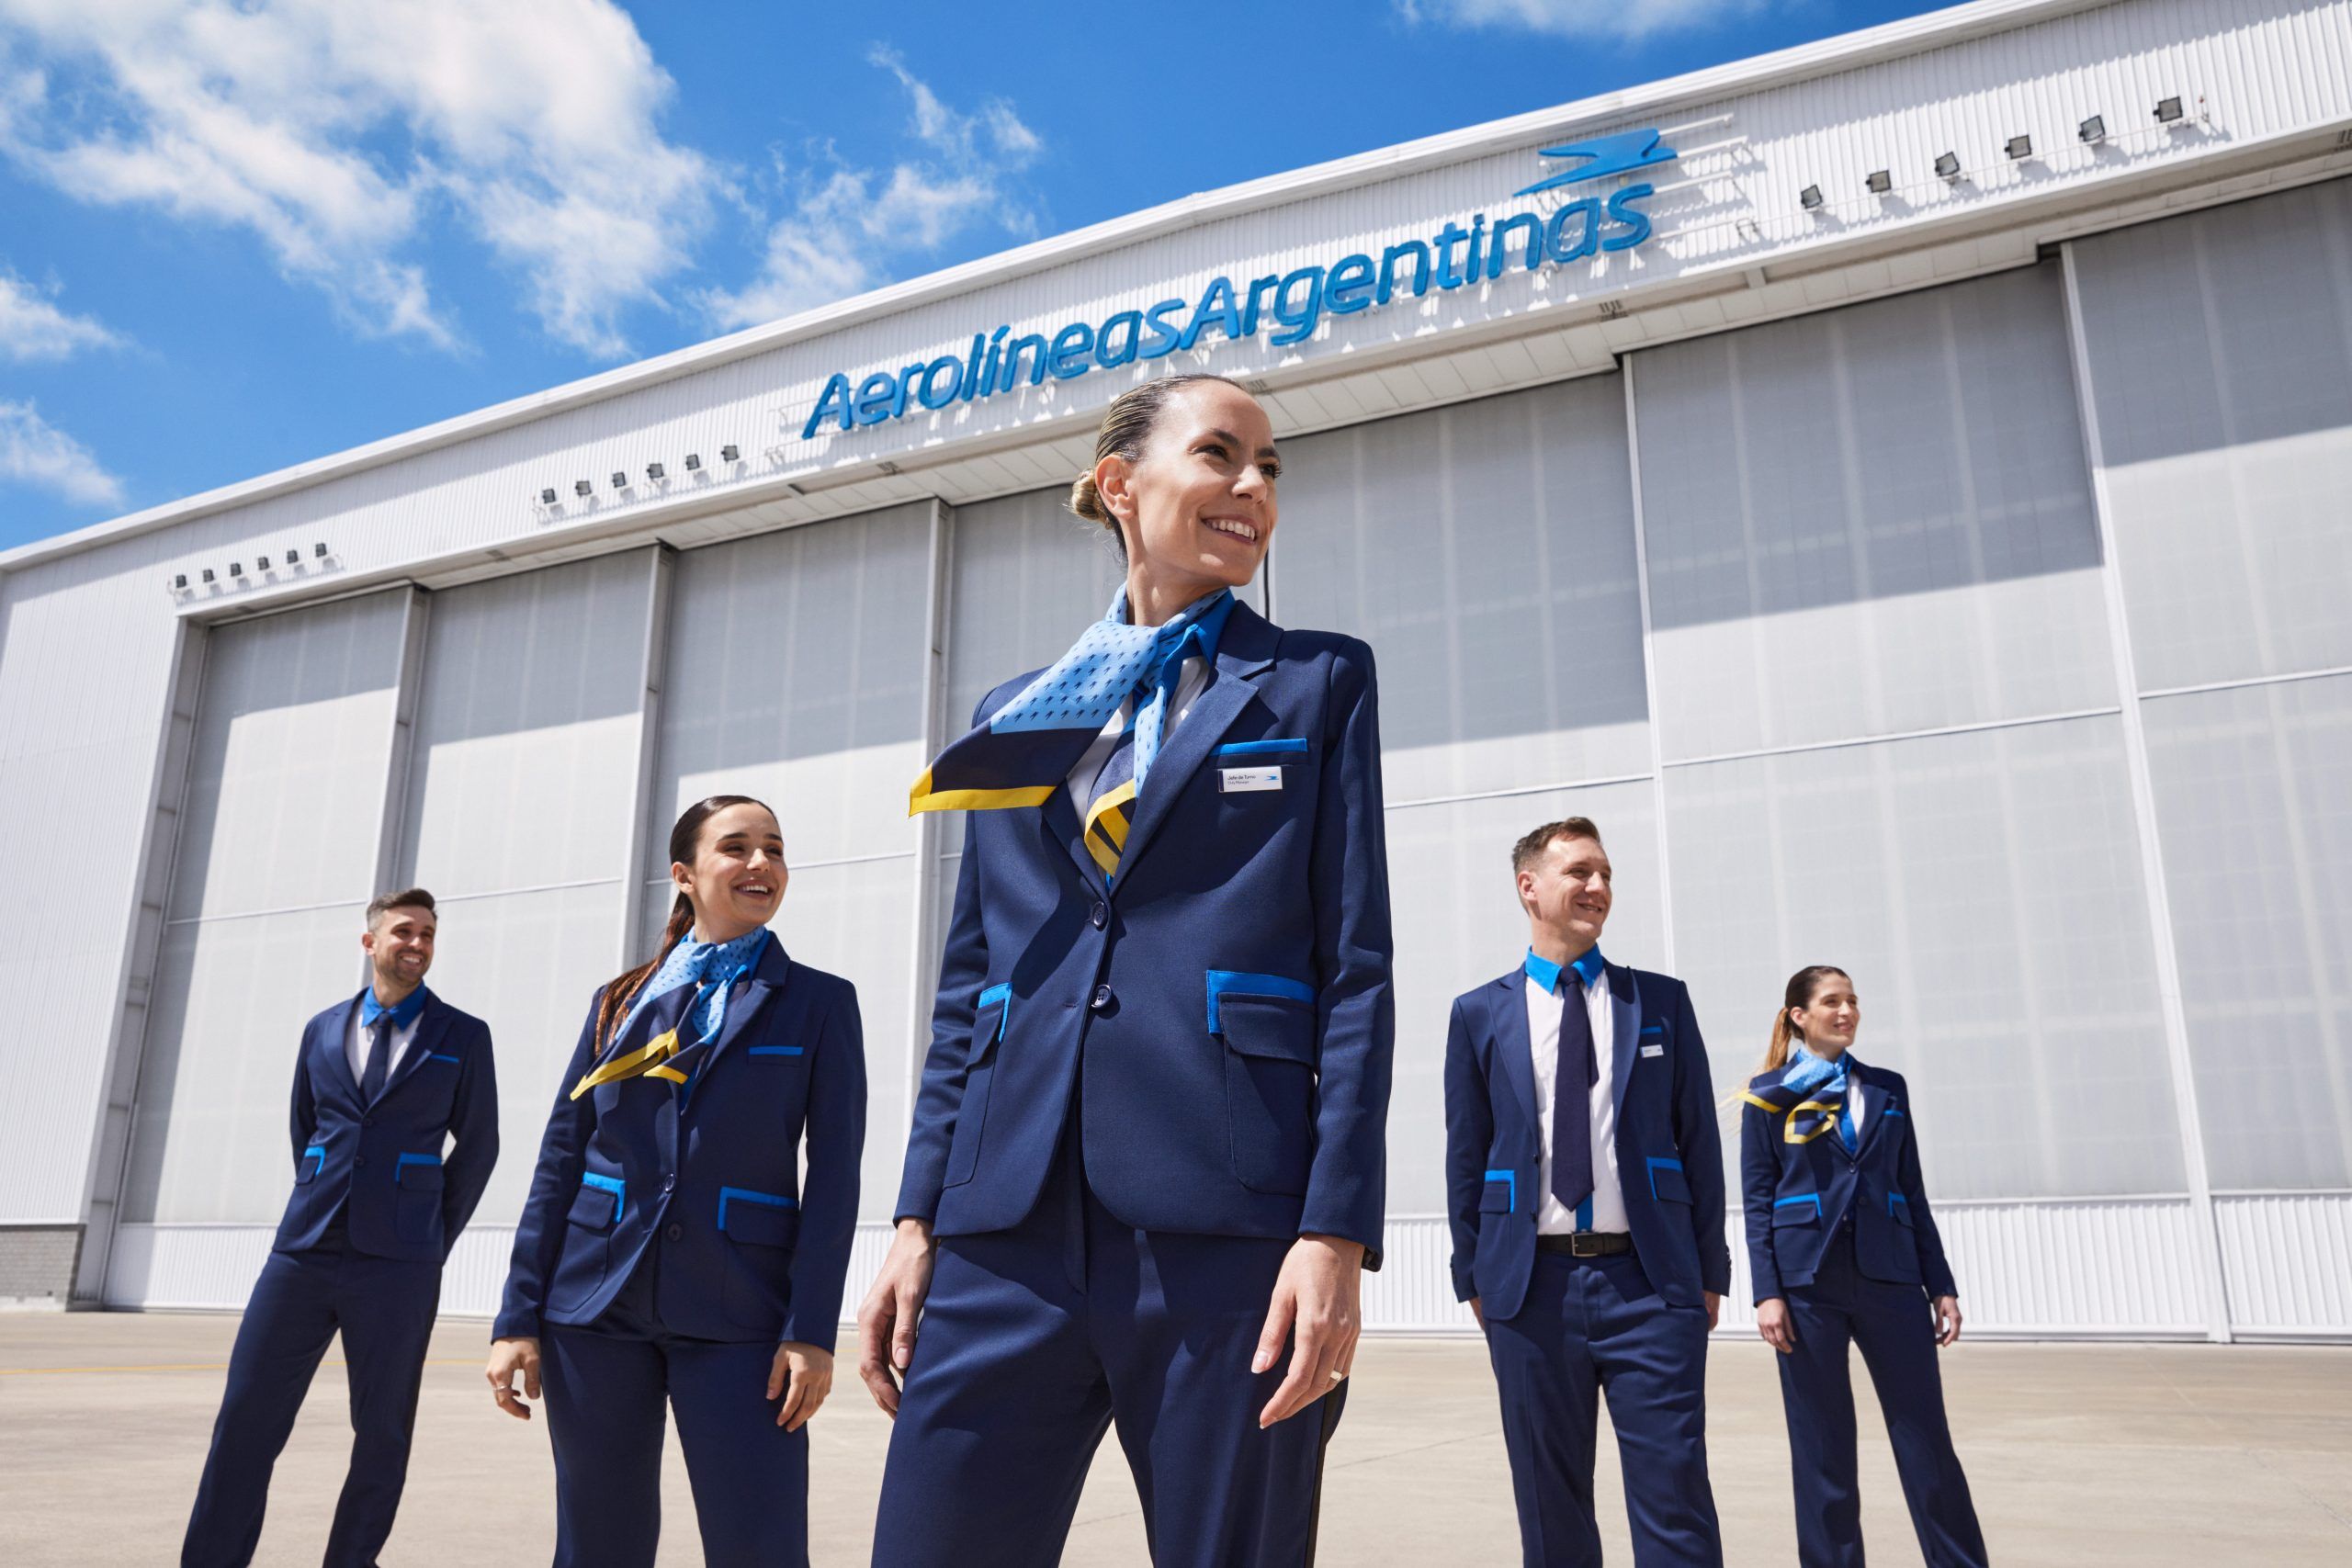 Aerolíneas Argentinas new uniform unviled Nov 6